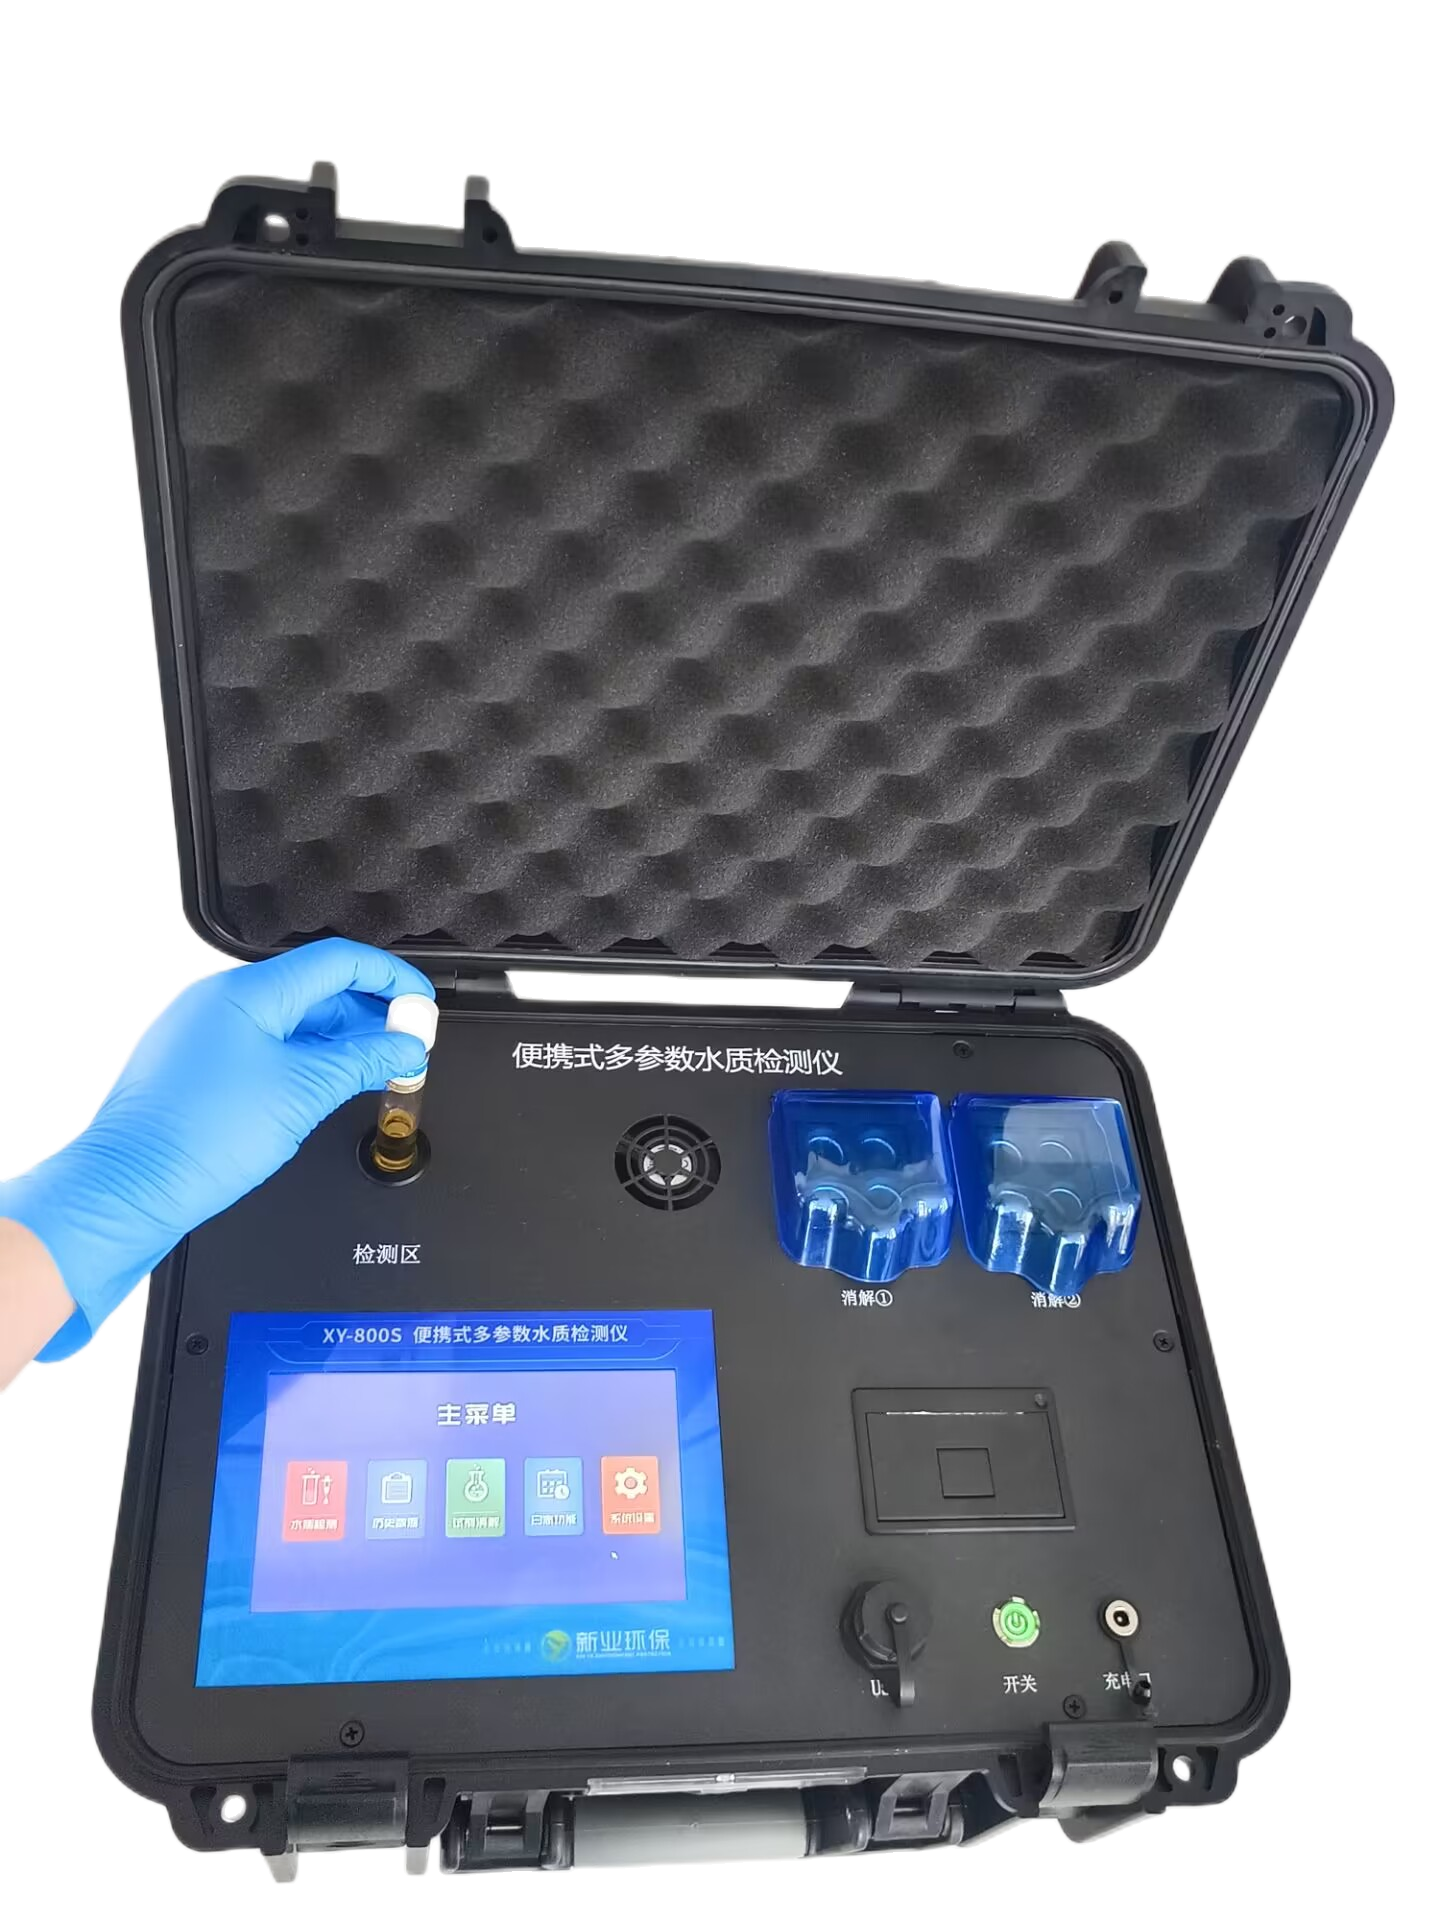 便携式水污染物监测设备和便携式水质多参数检测仪是一个